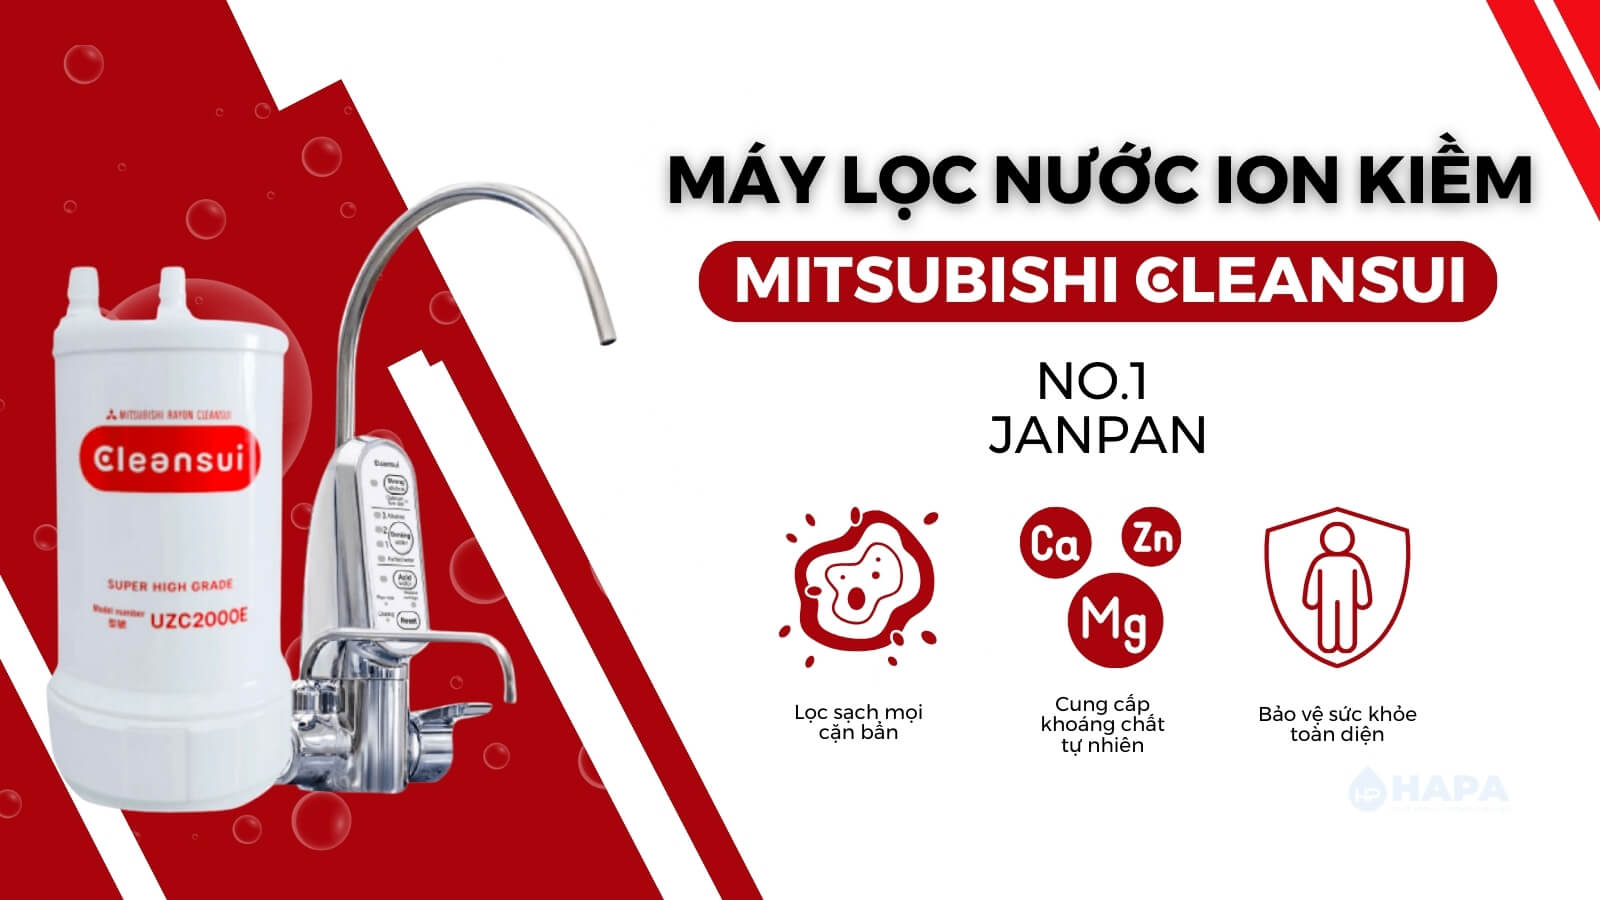 Máy lọc nước iON kiềm Mitsubishi Cleansui - Bảo vệ sức khỏe của bạn và gia đình một cách toàn diện